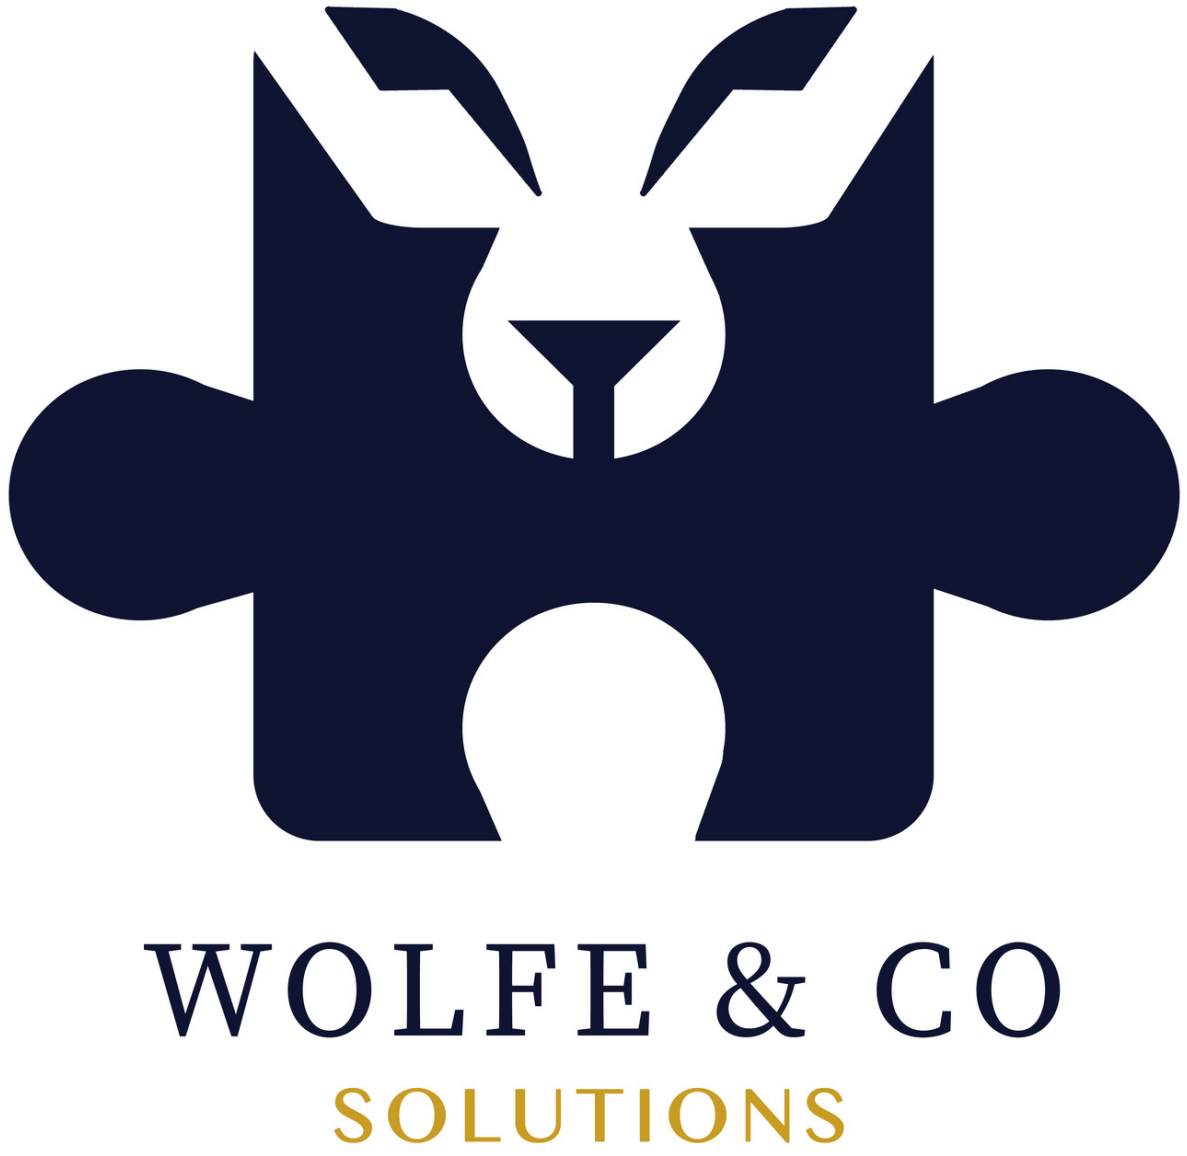 https://h2q.com.au/wp-content/uploads/2022/02/Wolfe-Co-logo.png